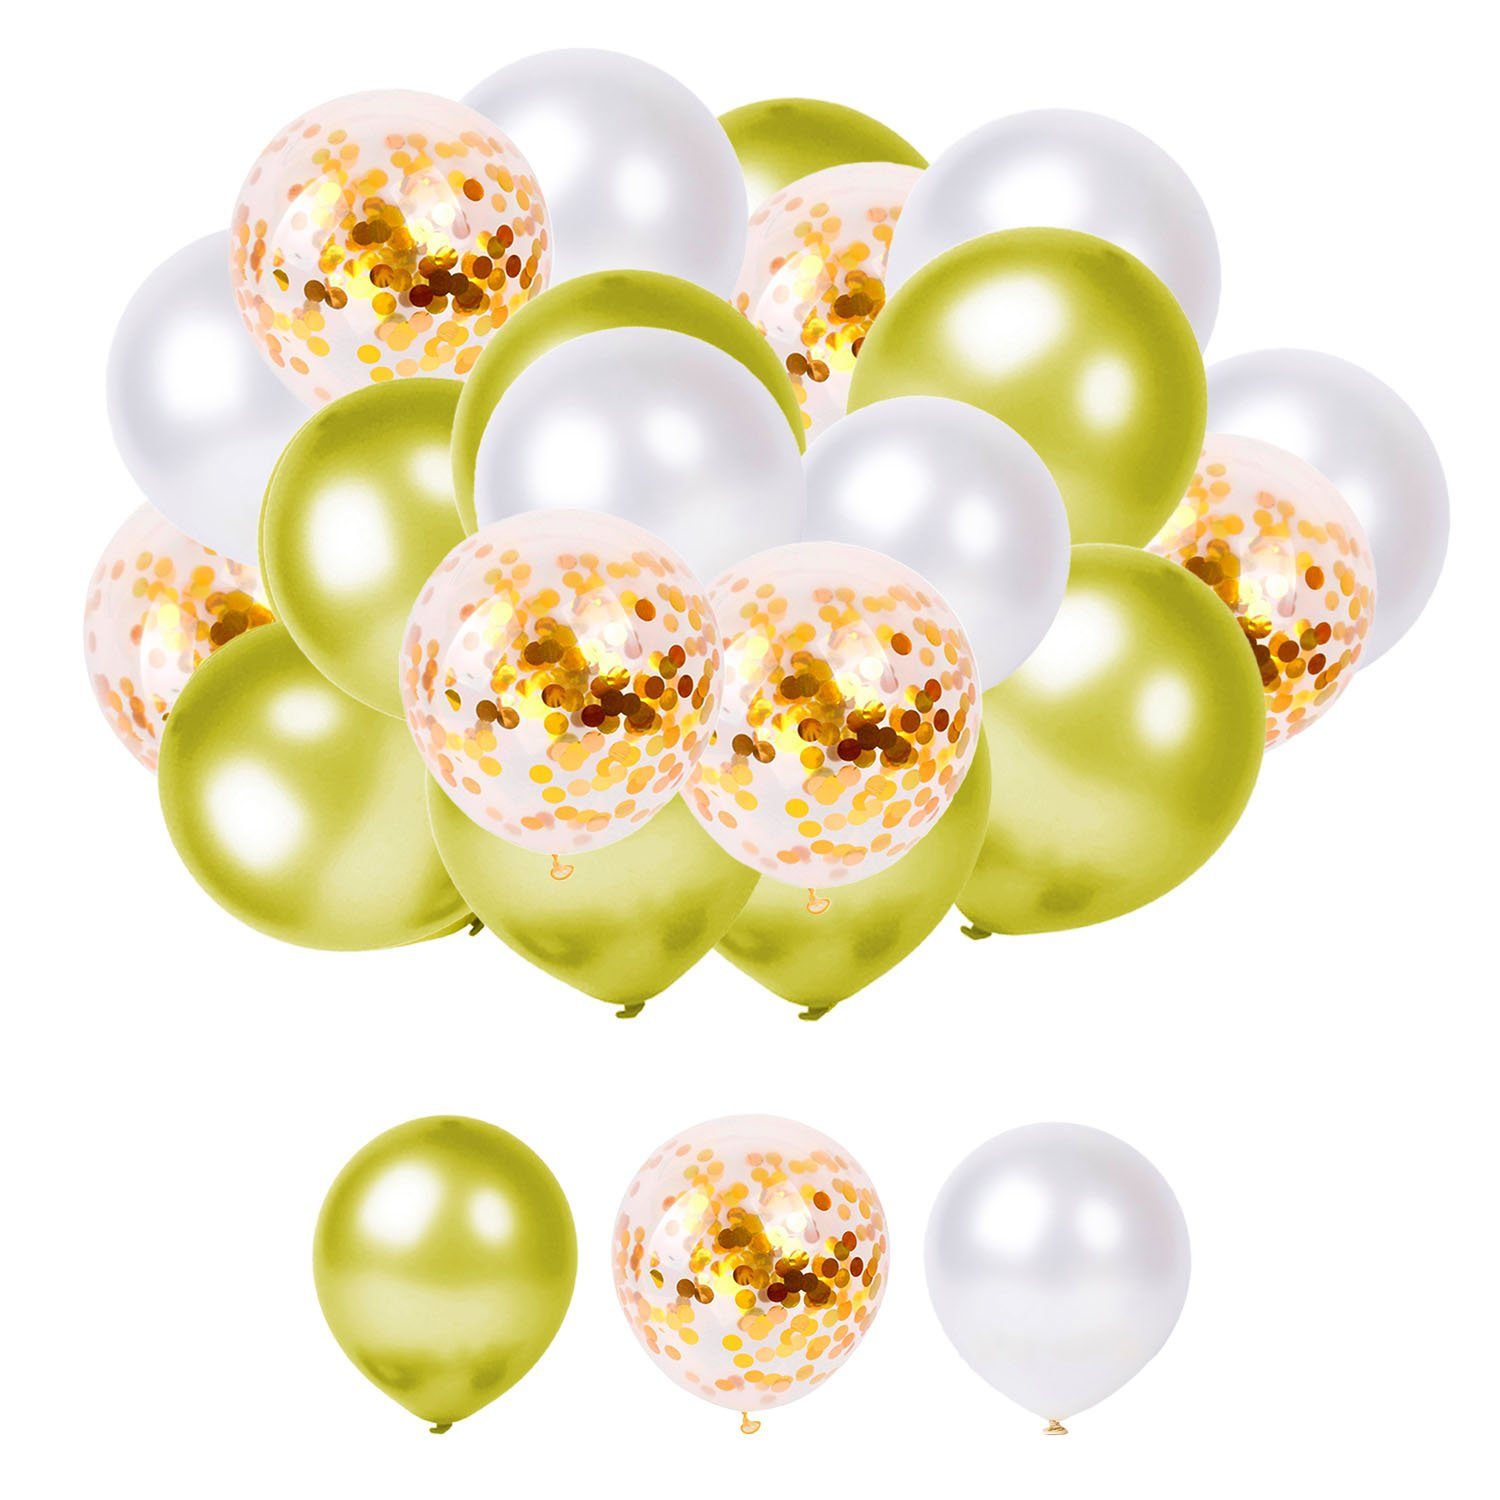 Kopper-24 Folienballon Luftballon Party Set, 60 Luftballons, gold